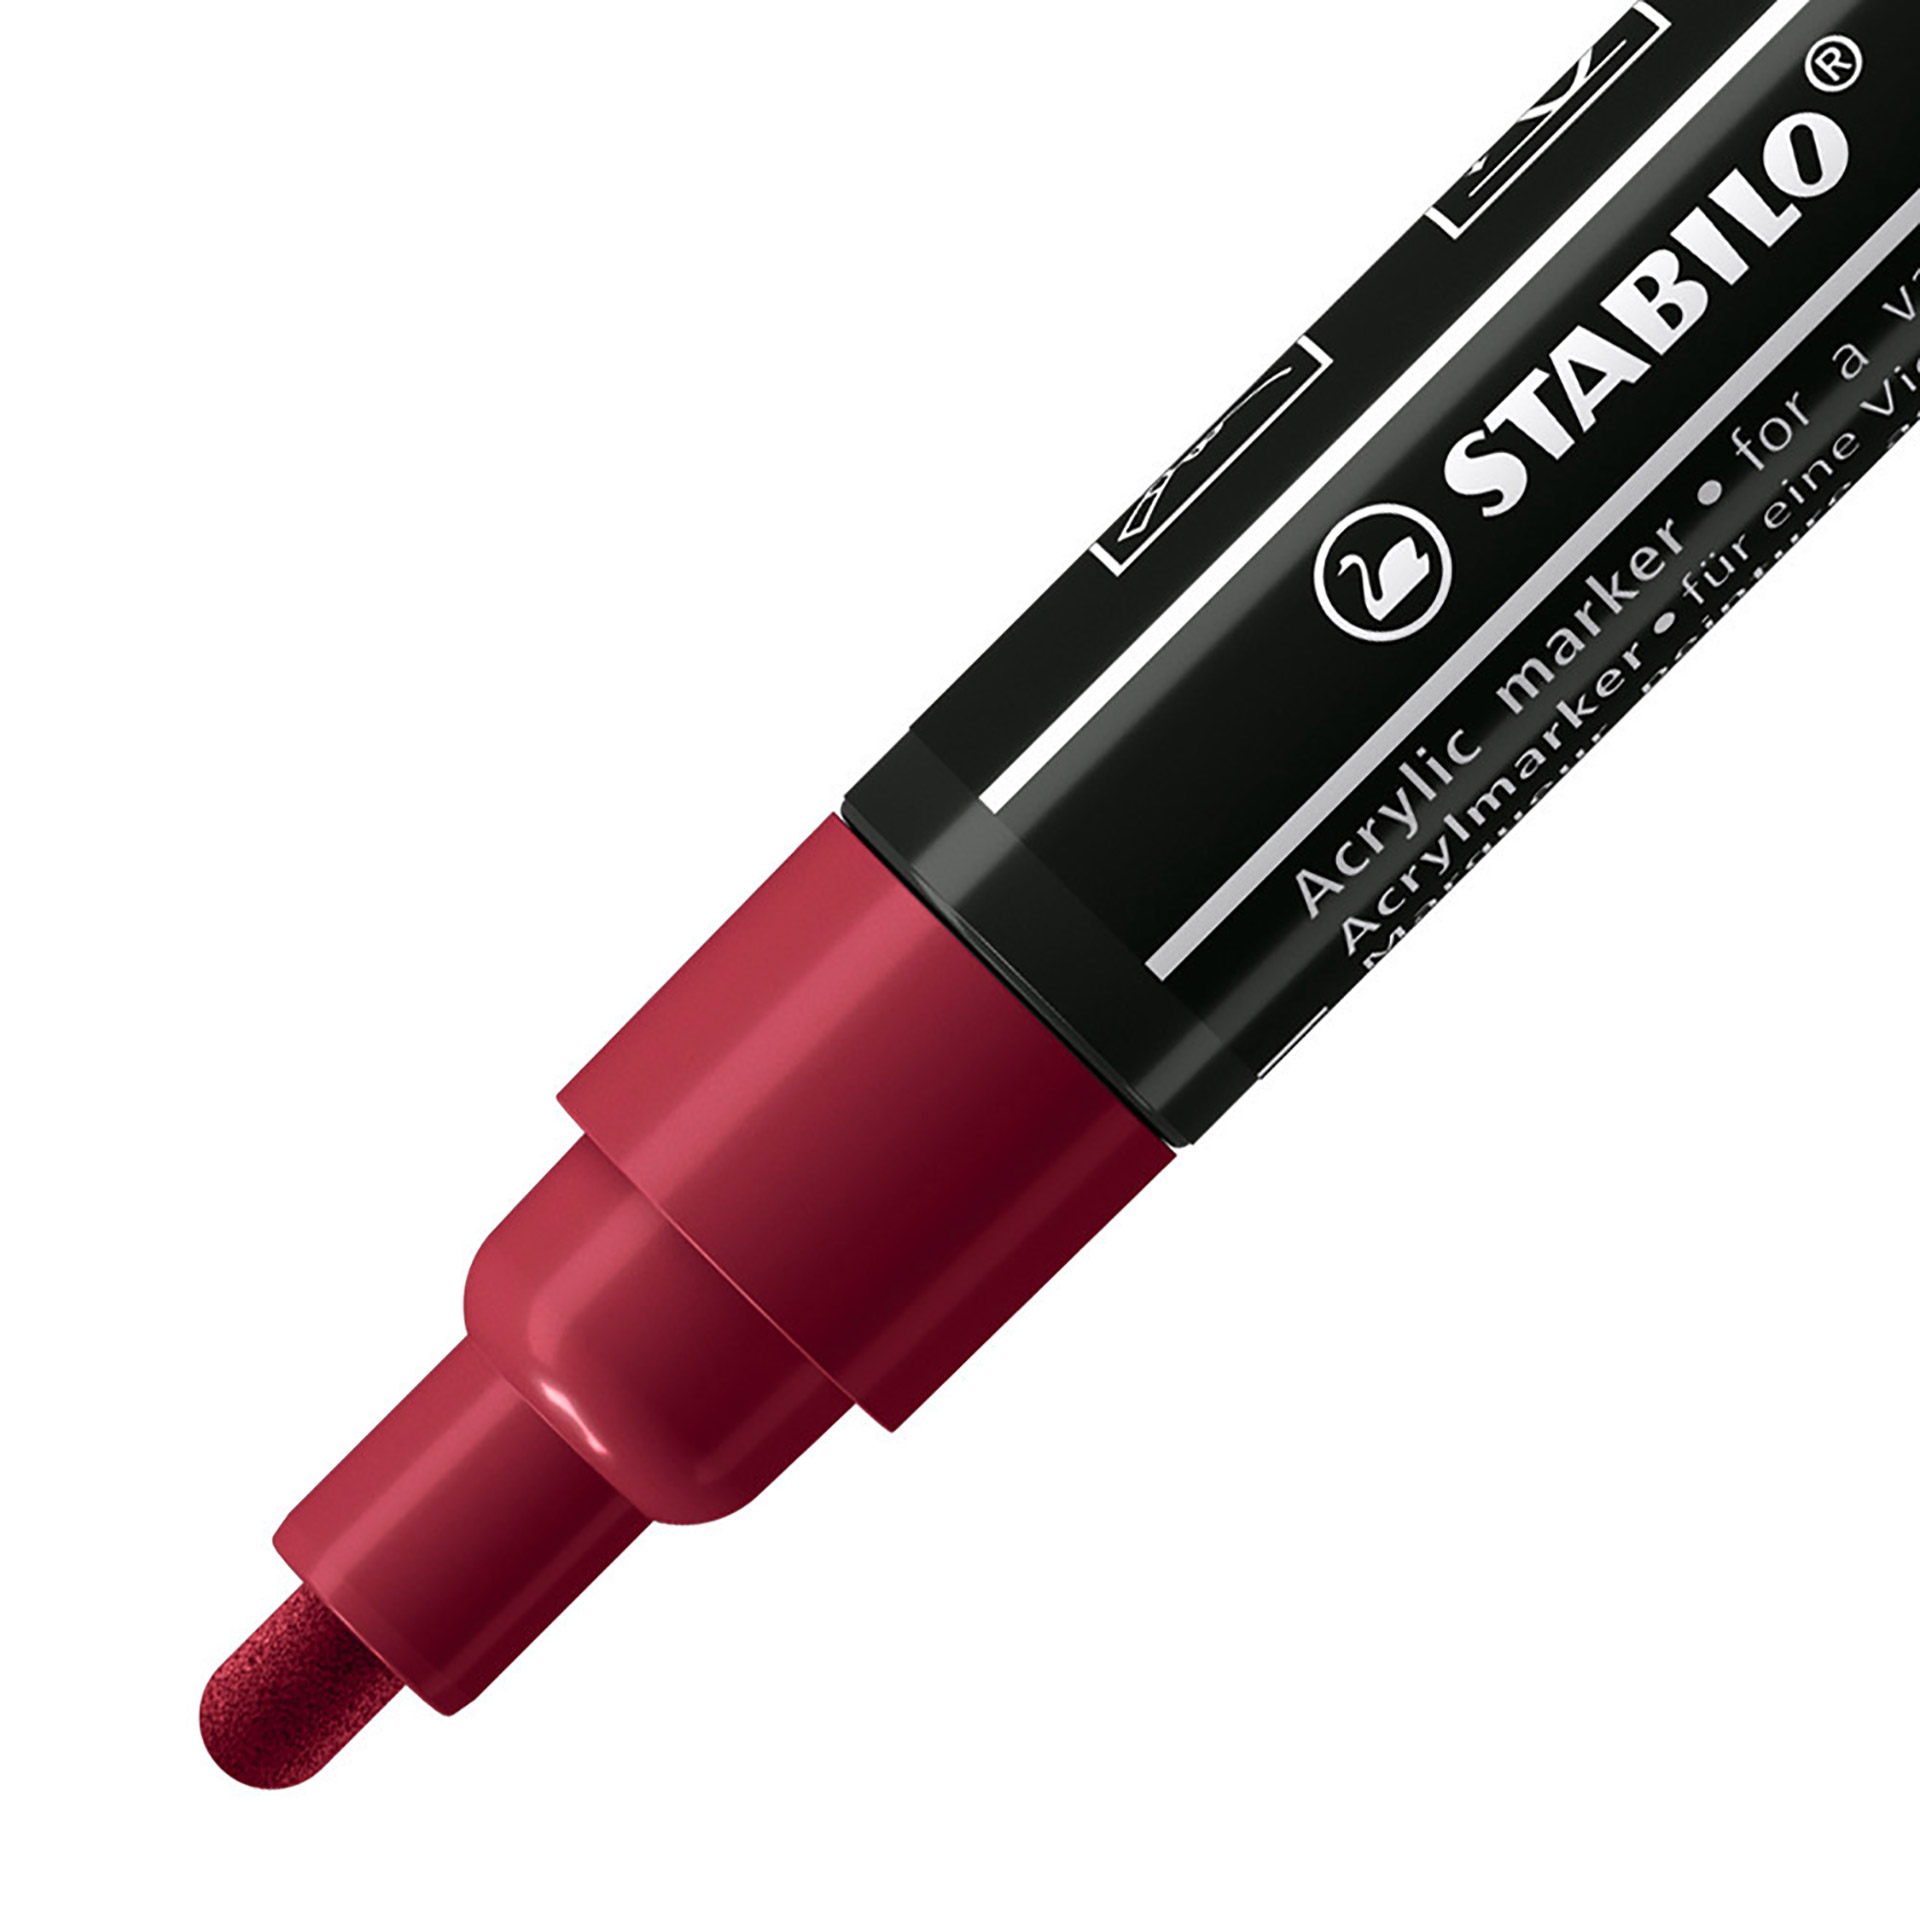 STABILO FREE Acrylic - T300 Punta rotonda 2-3mm - Confezione da 5 - Porpora, , large